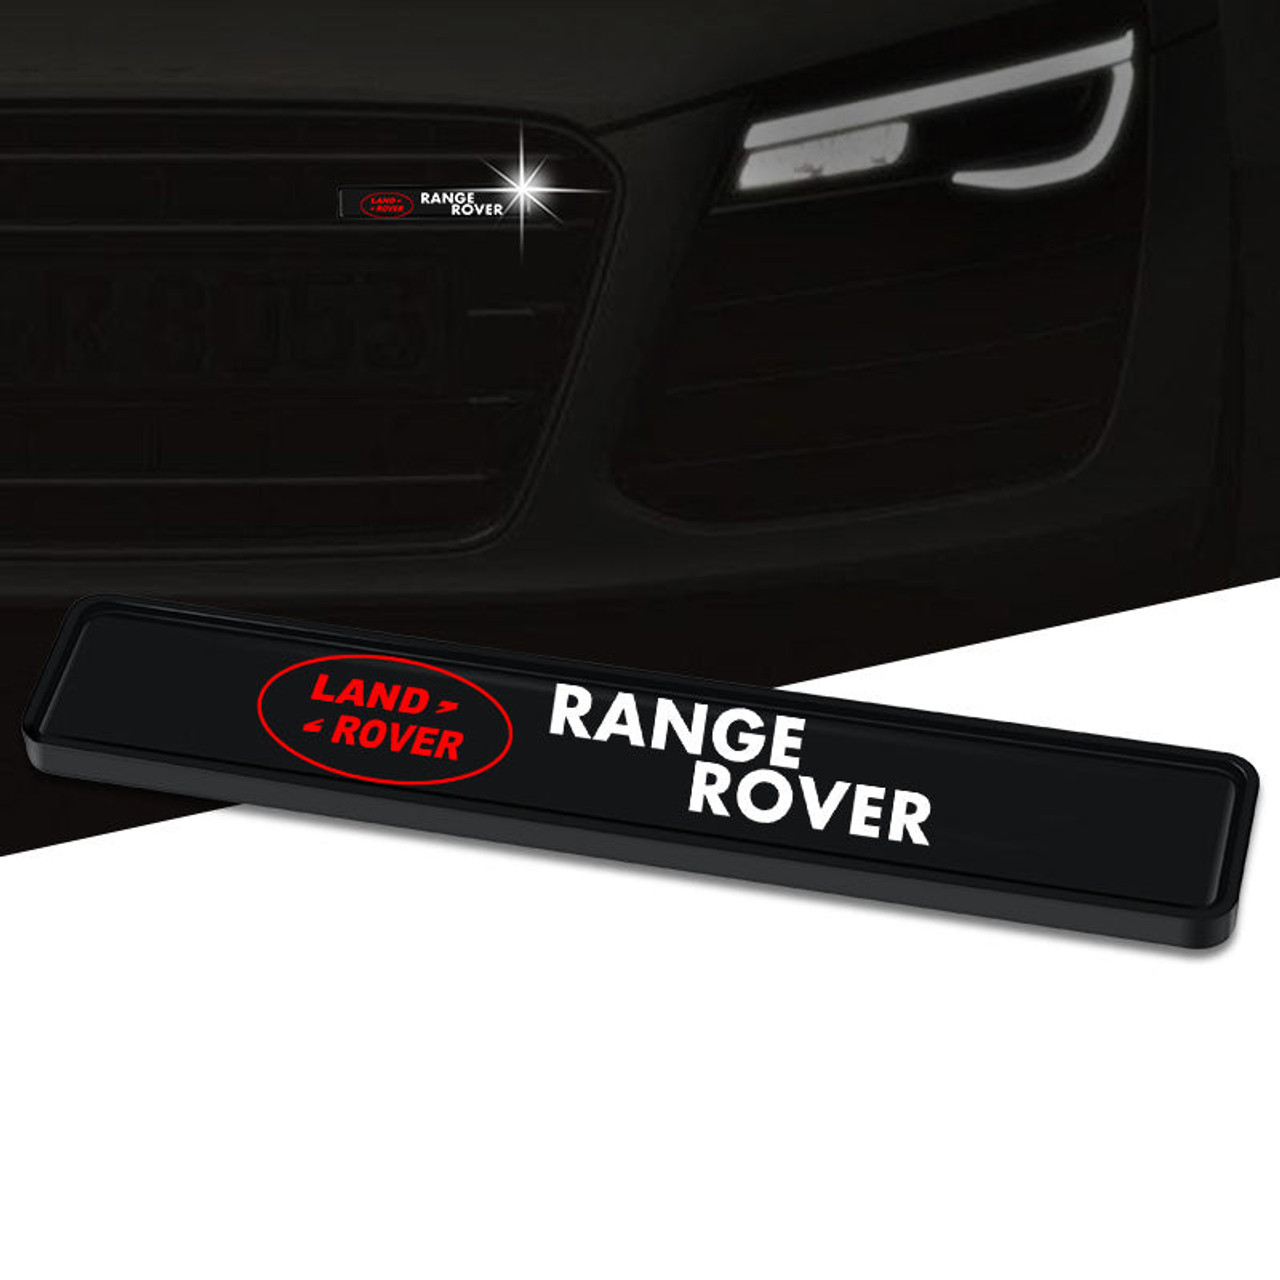 Land Rover LED Light Grille Emblem Car Styling Ornament Badge Sign